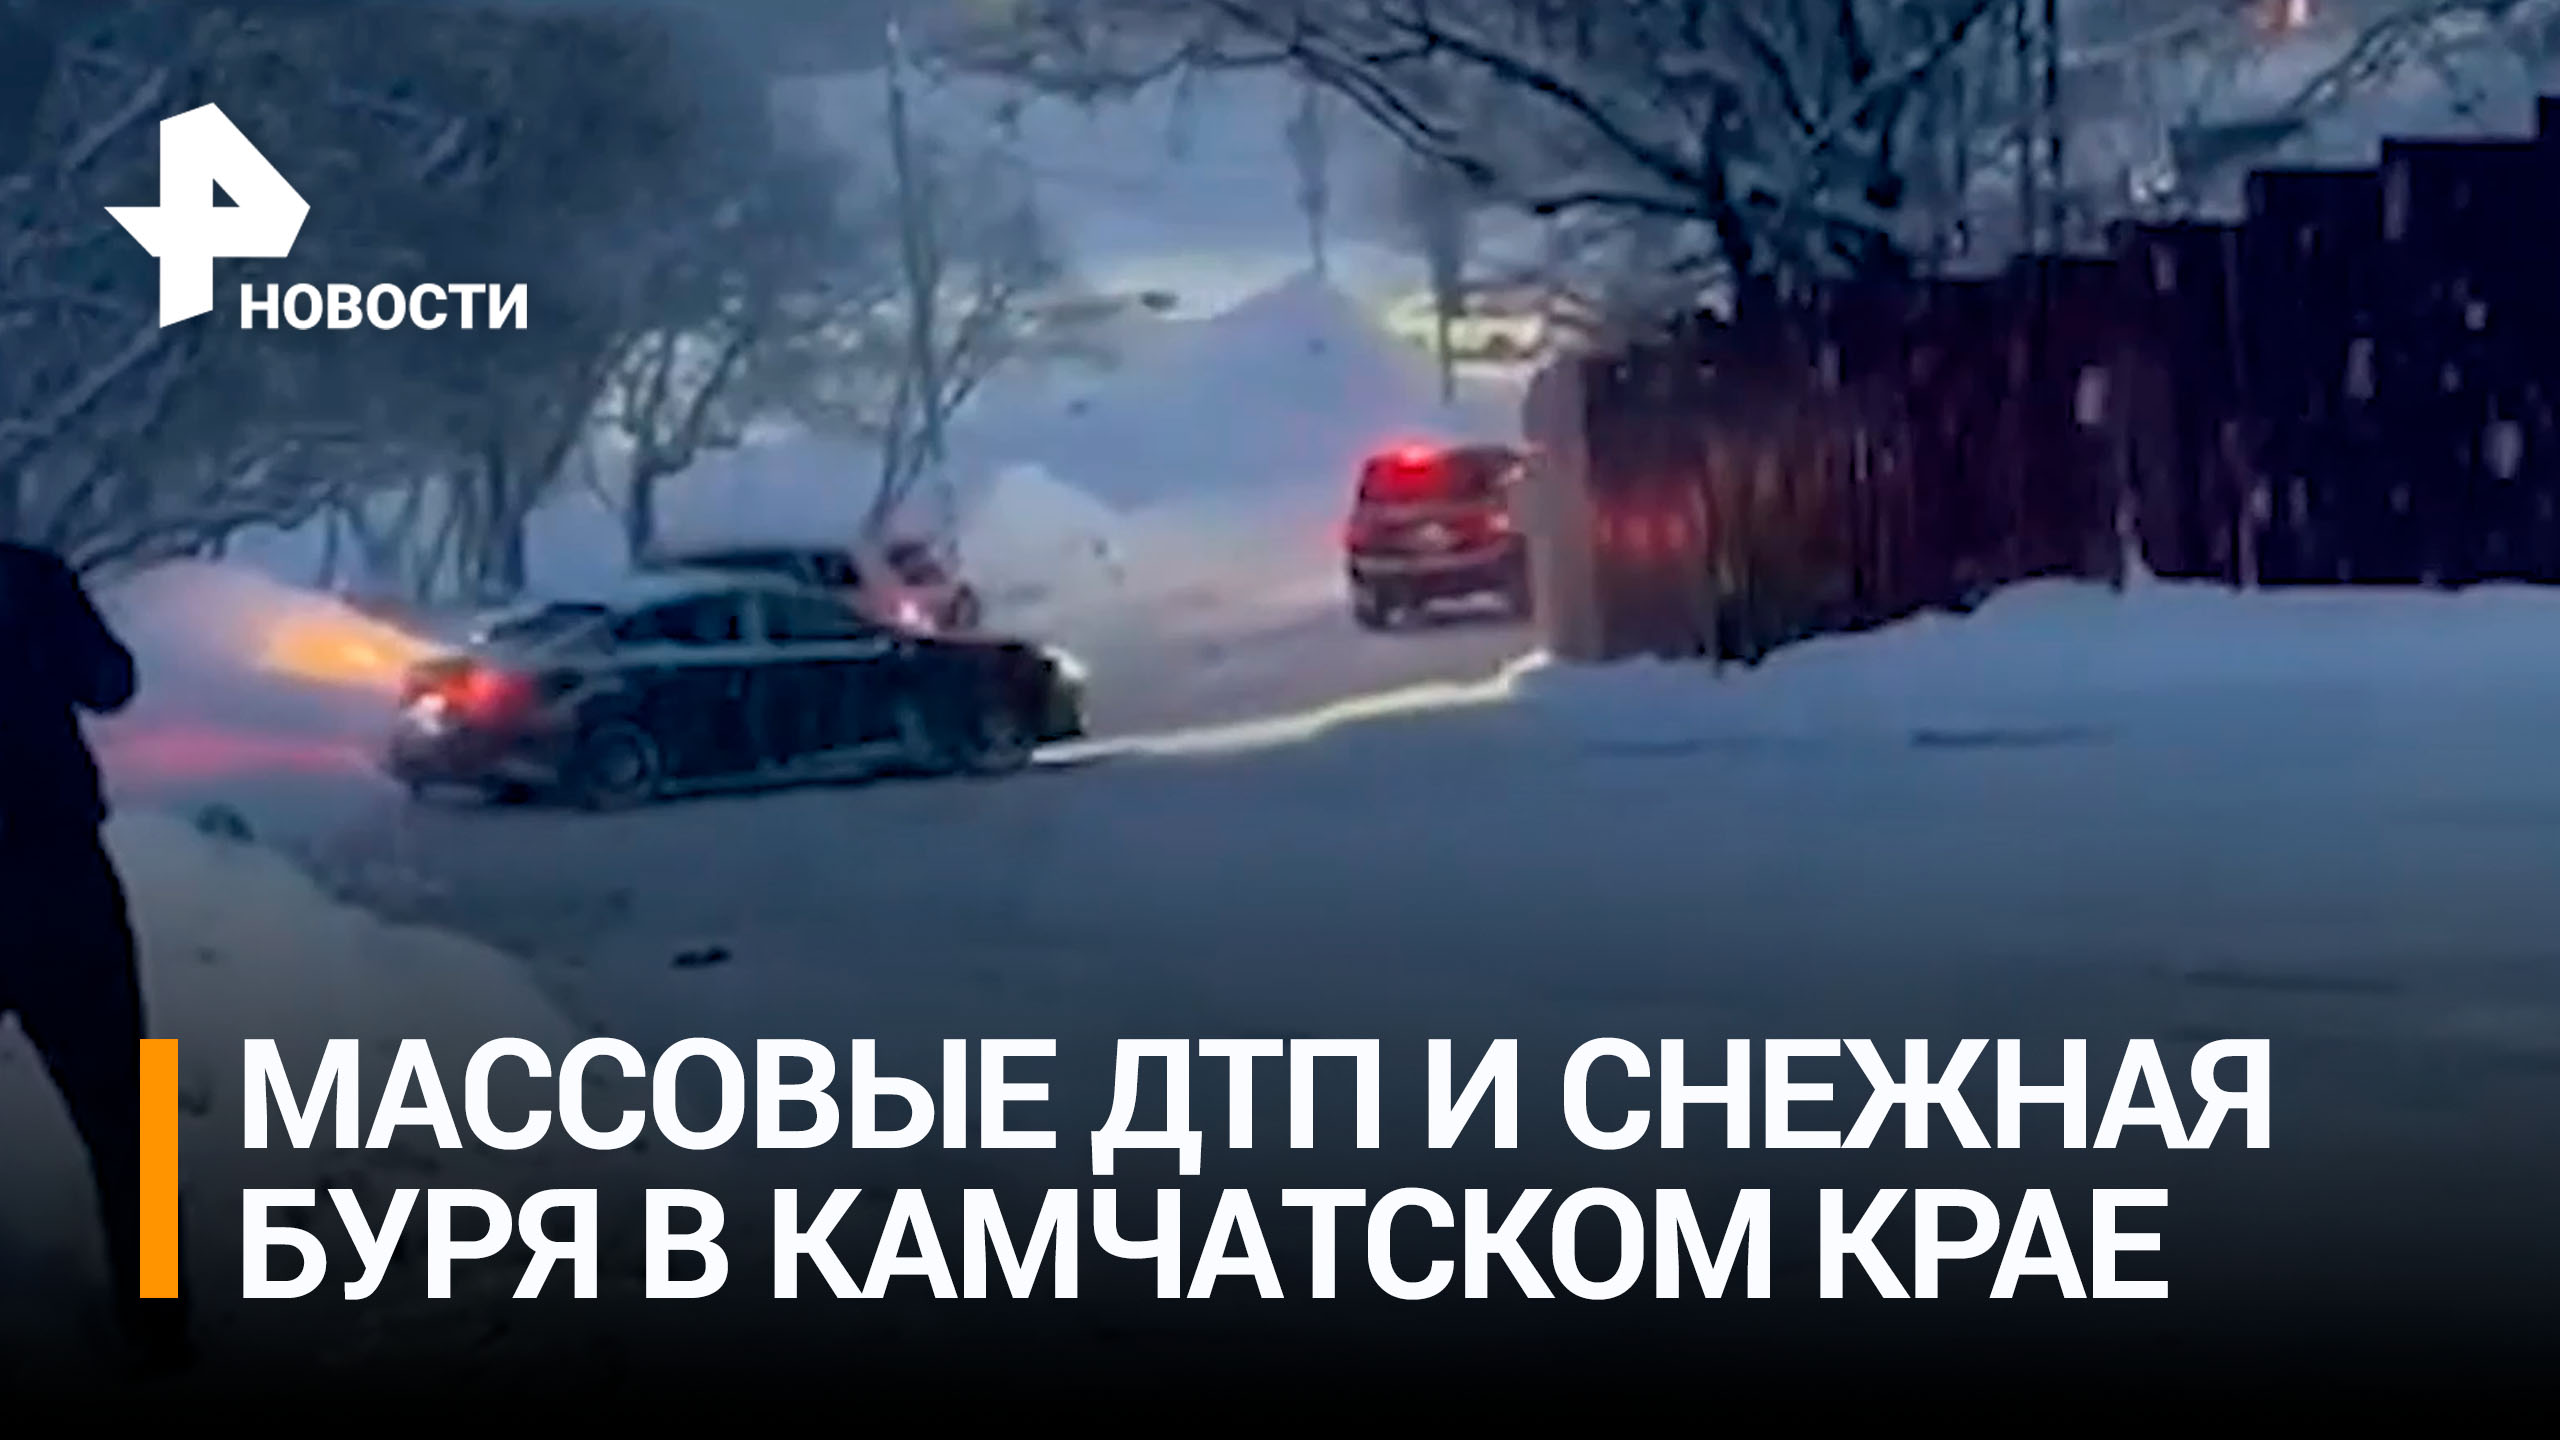 На заснеженных дорогах Камчатского края машины теряют управление / РЕН Новости